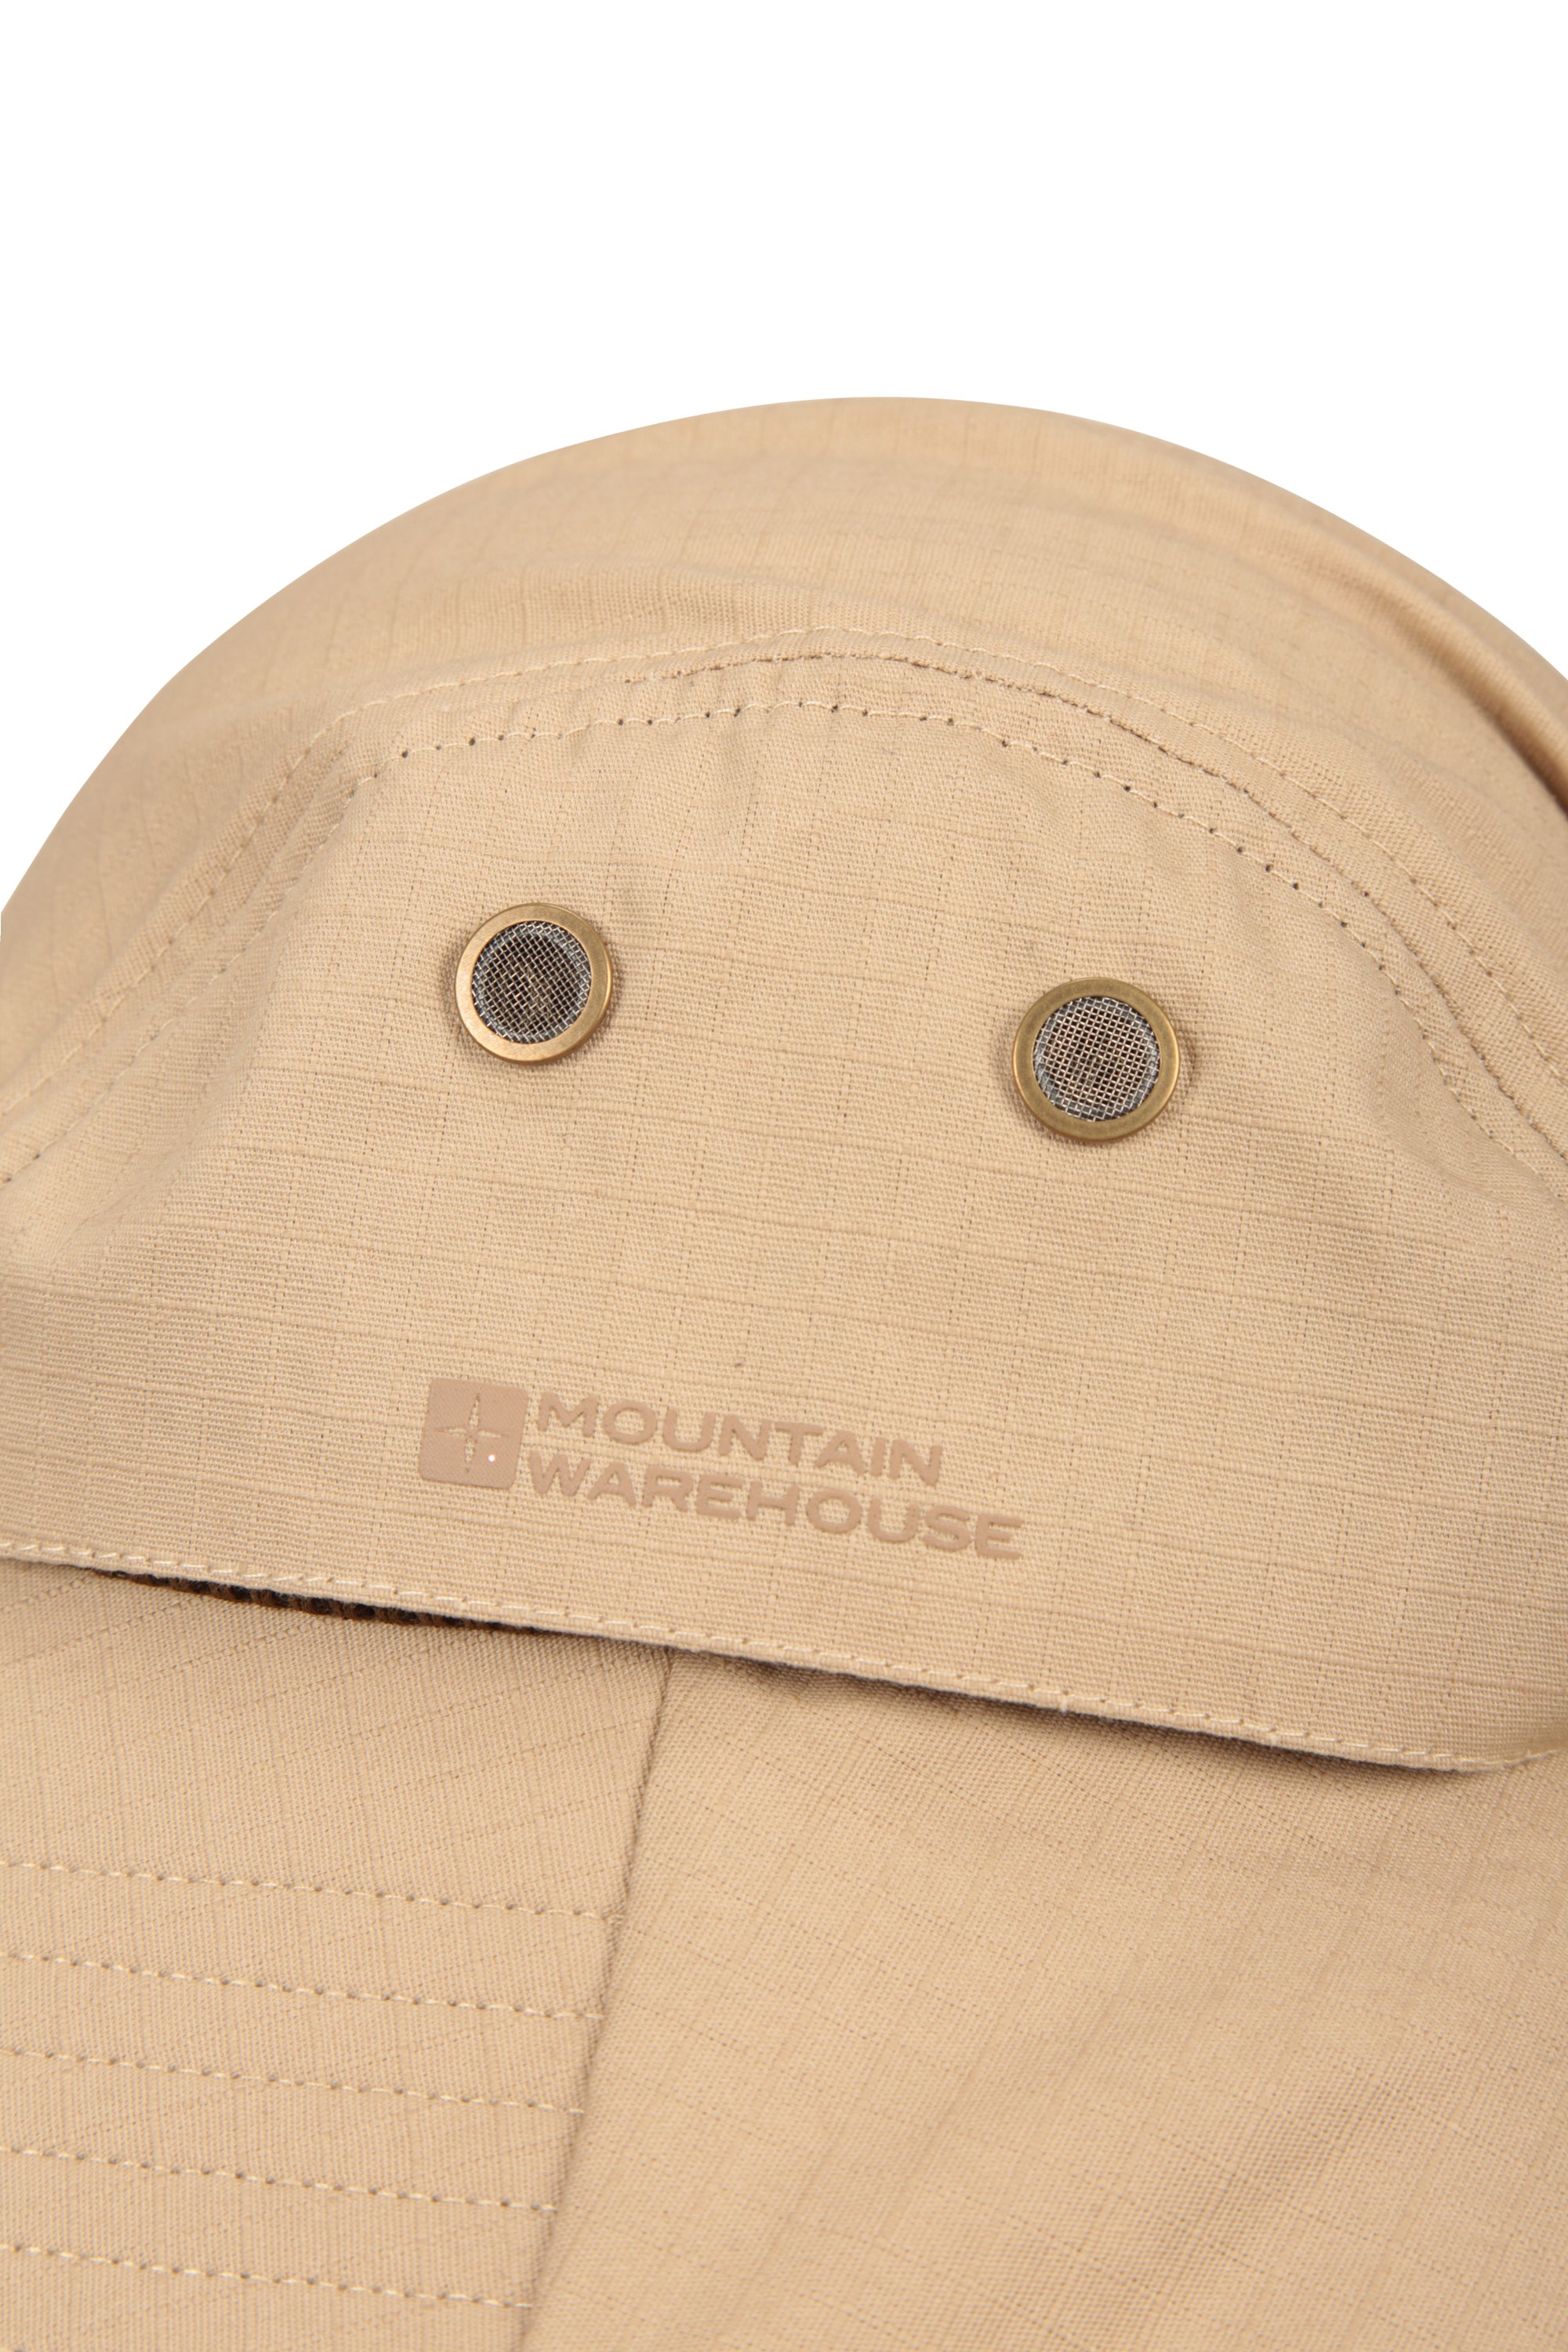 Mountain Warehouse Waterproof Cap - Beige | Size ONE